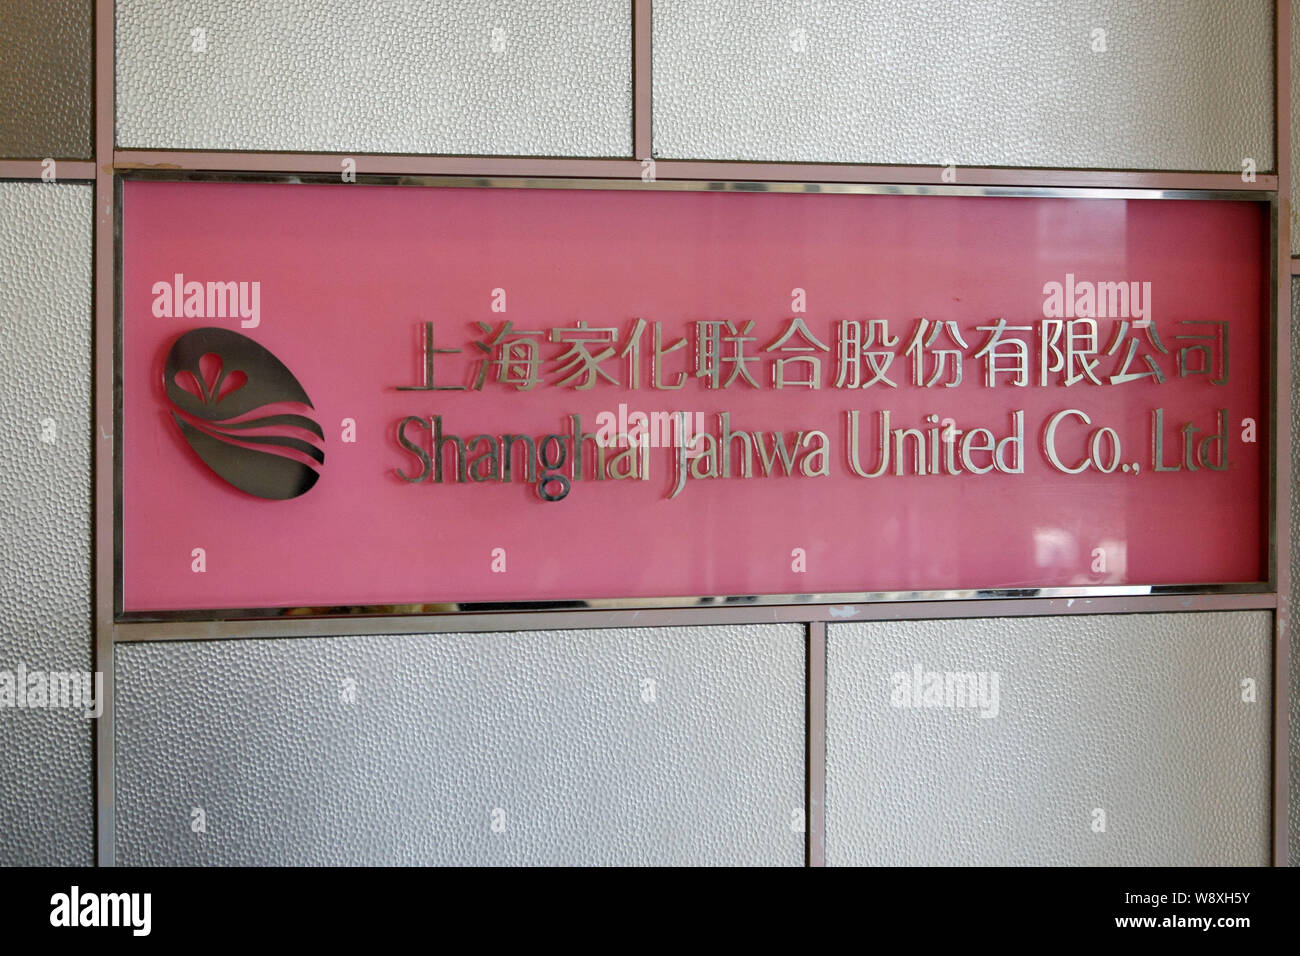 ---- Repräsentant von Shanghai Jahwa Group ist dargestellt in Shanghai, China, 14. Mai 2013. Shanghai Jahwa United wurde verurteilt 300.000 Yuan (US $ 48,190) durch Stockfoto